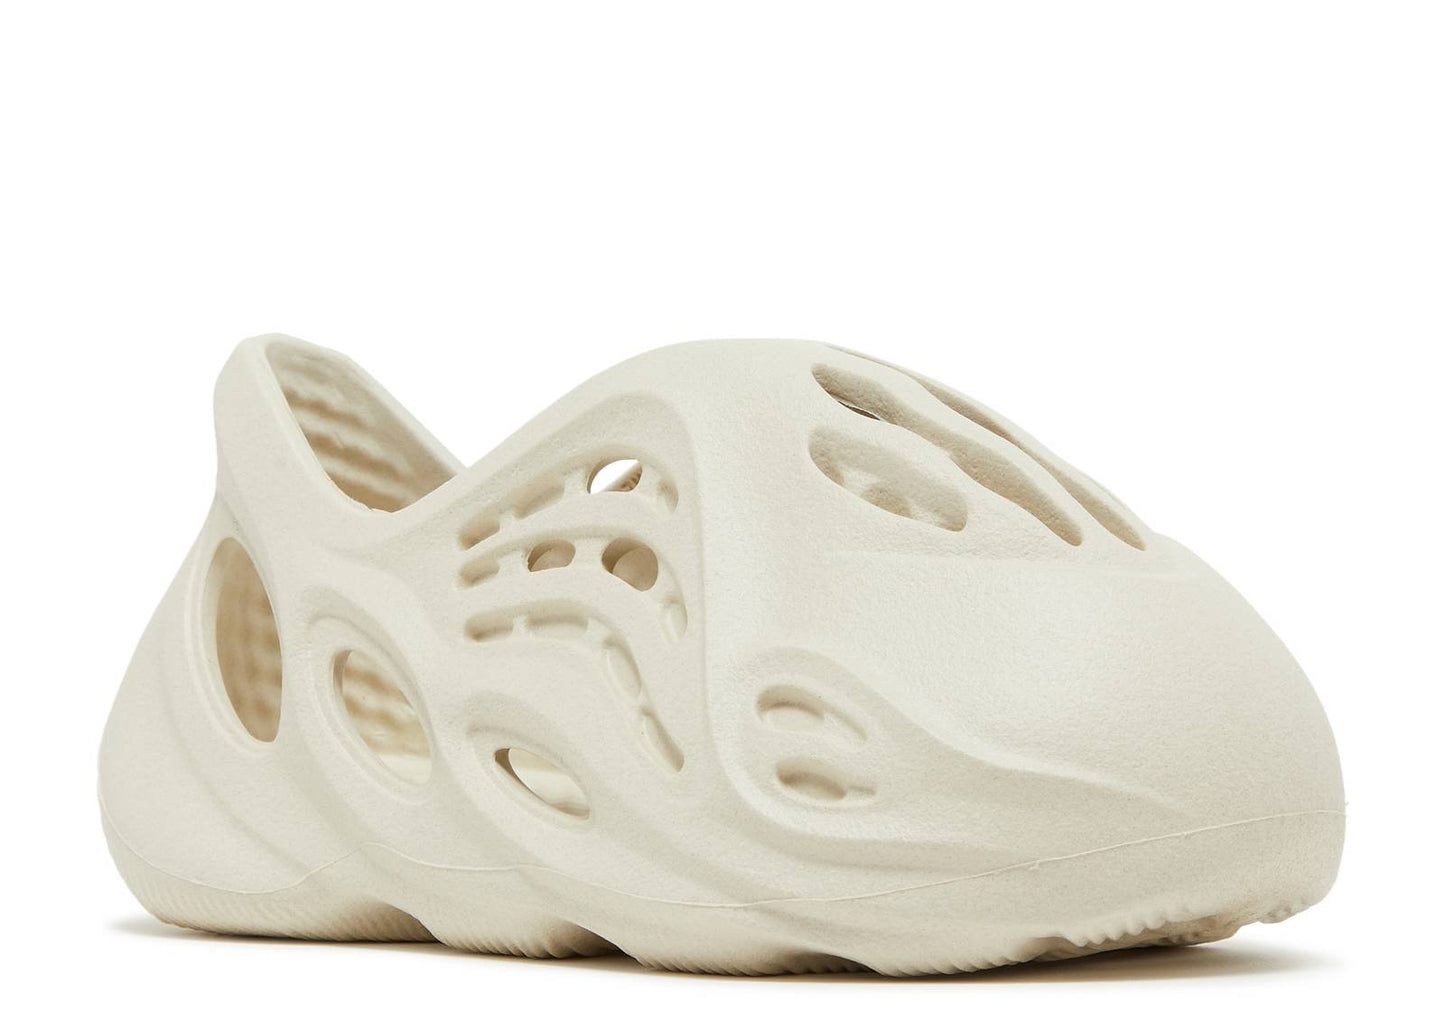 Adidas Yeezy Foam Runner Infant "Sand"